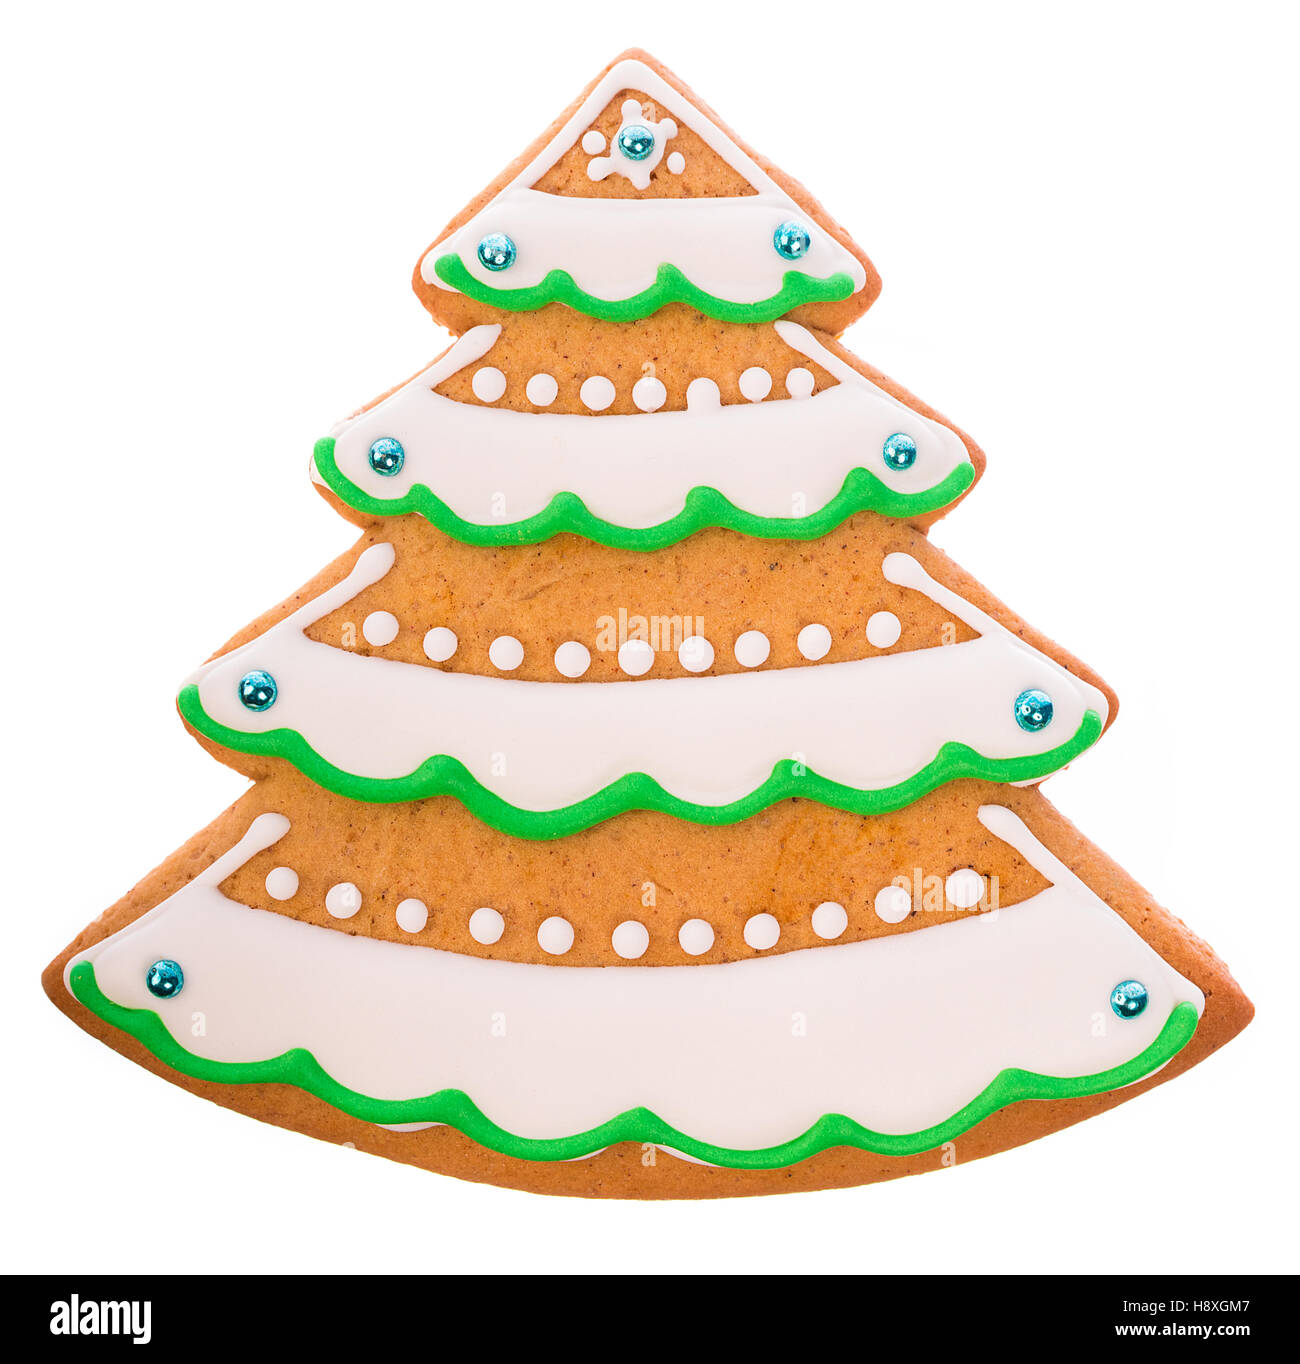 Schöne und leckere Lebkuchen Weihnachten Lebkuchen Baum auf weißem Hintergrund Stockfoto